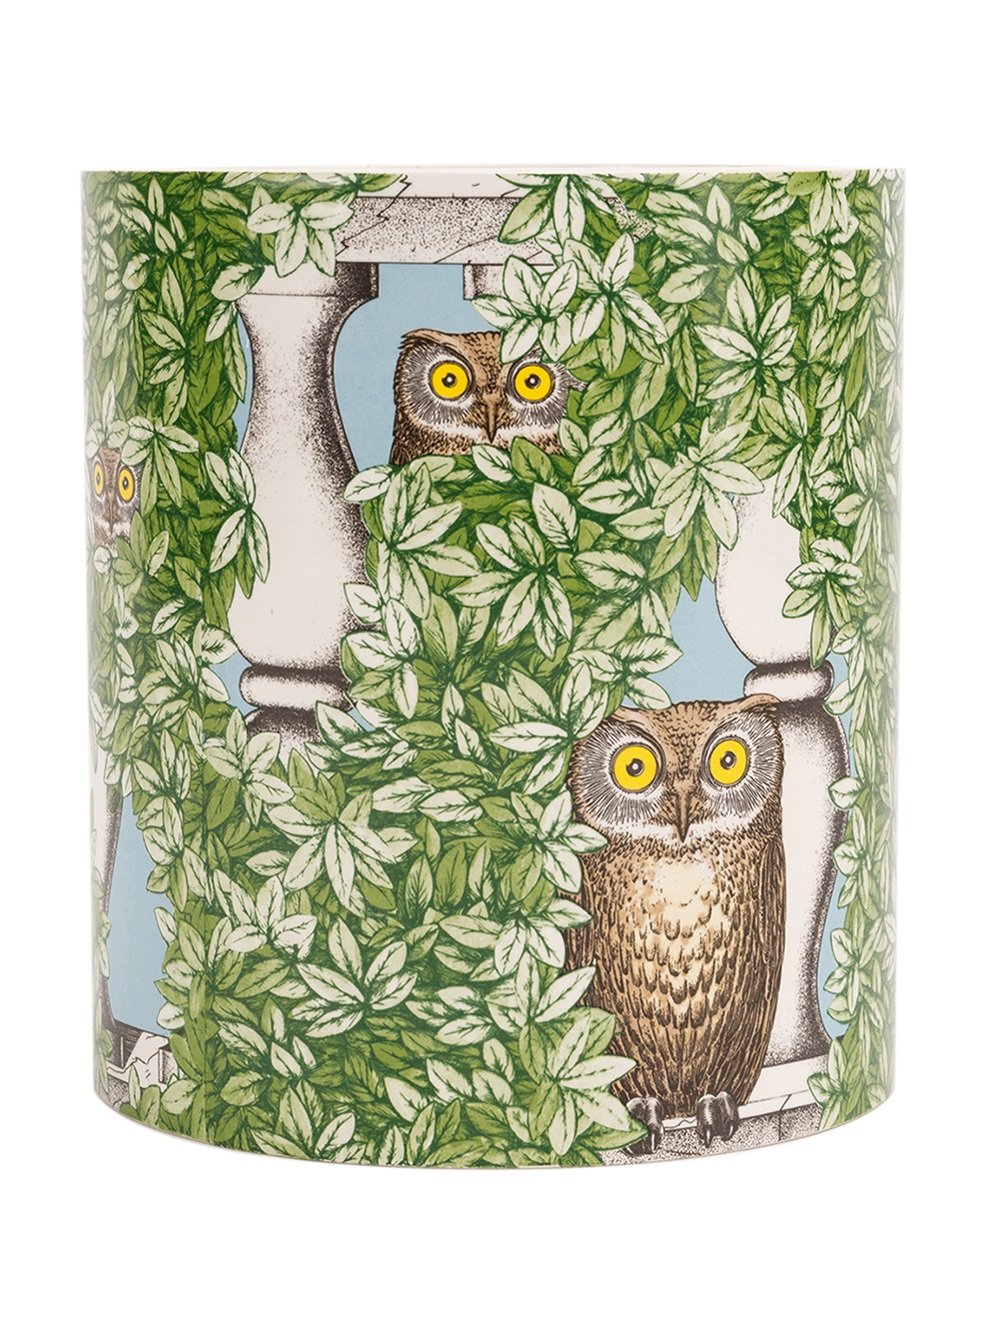 fornasetti wallpaper faces,owl,green,bird of prey,bird,branch